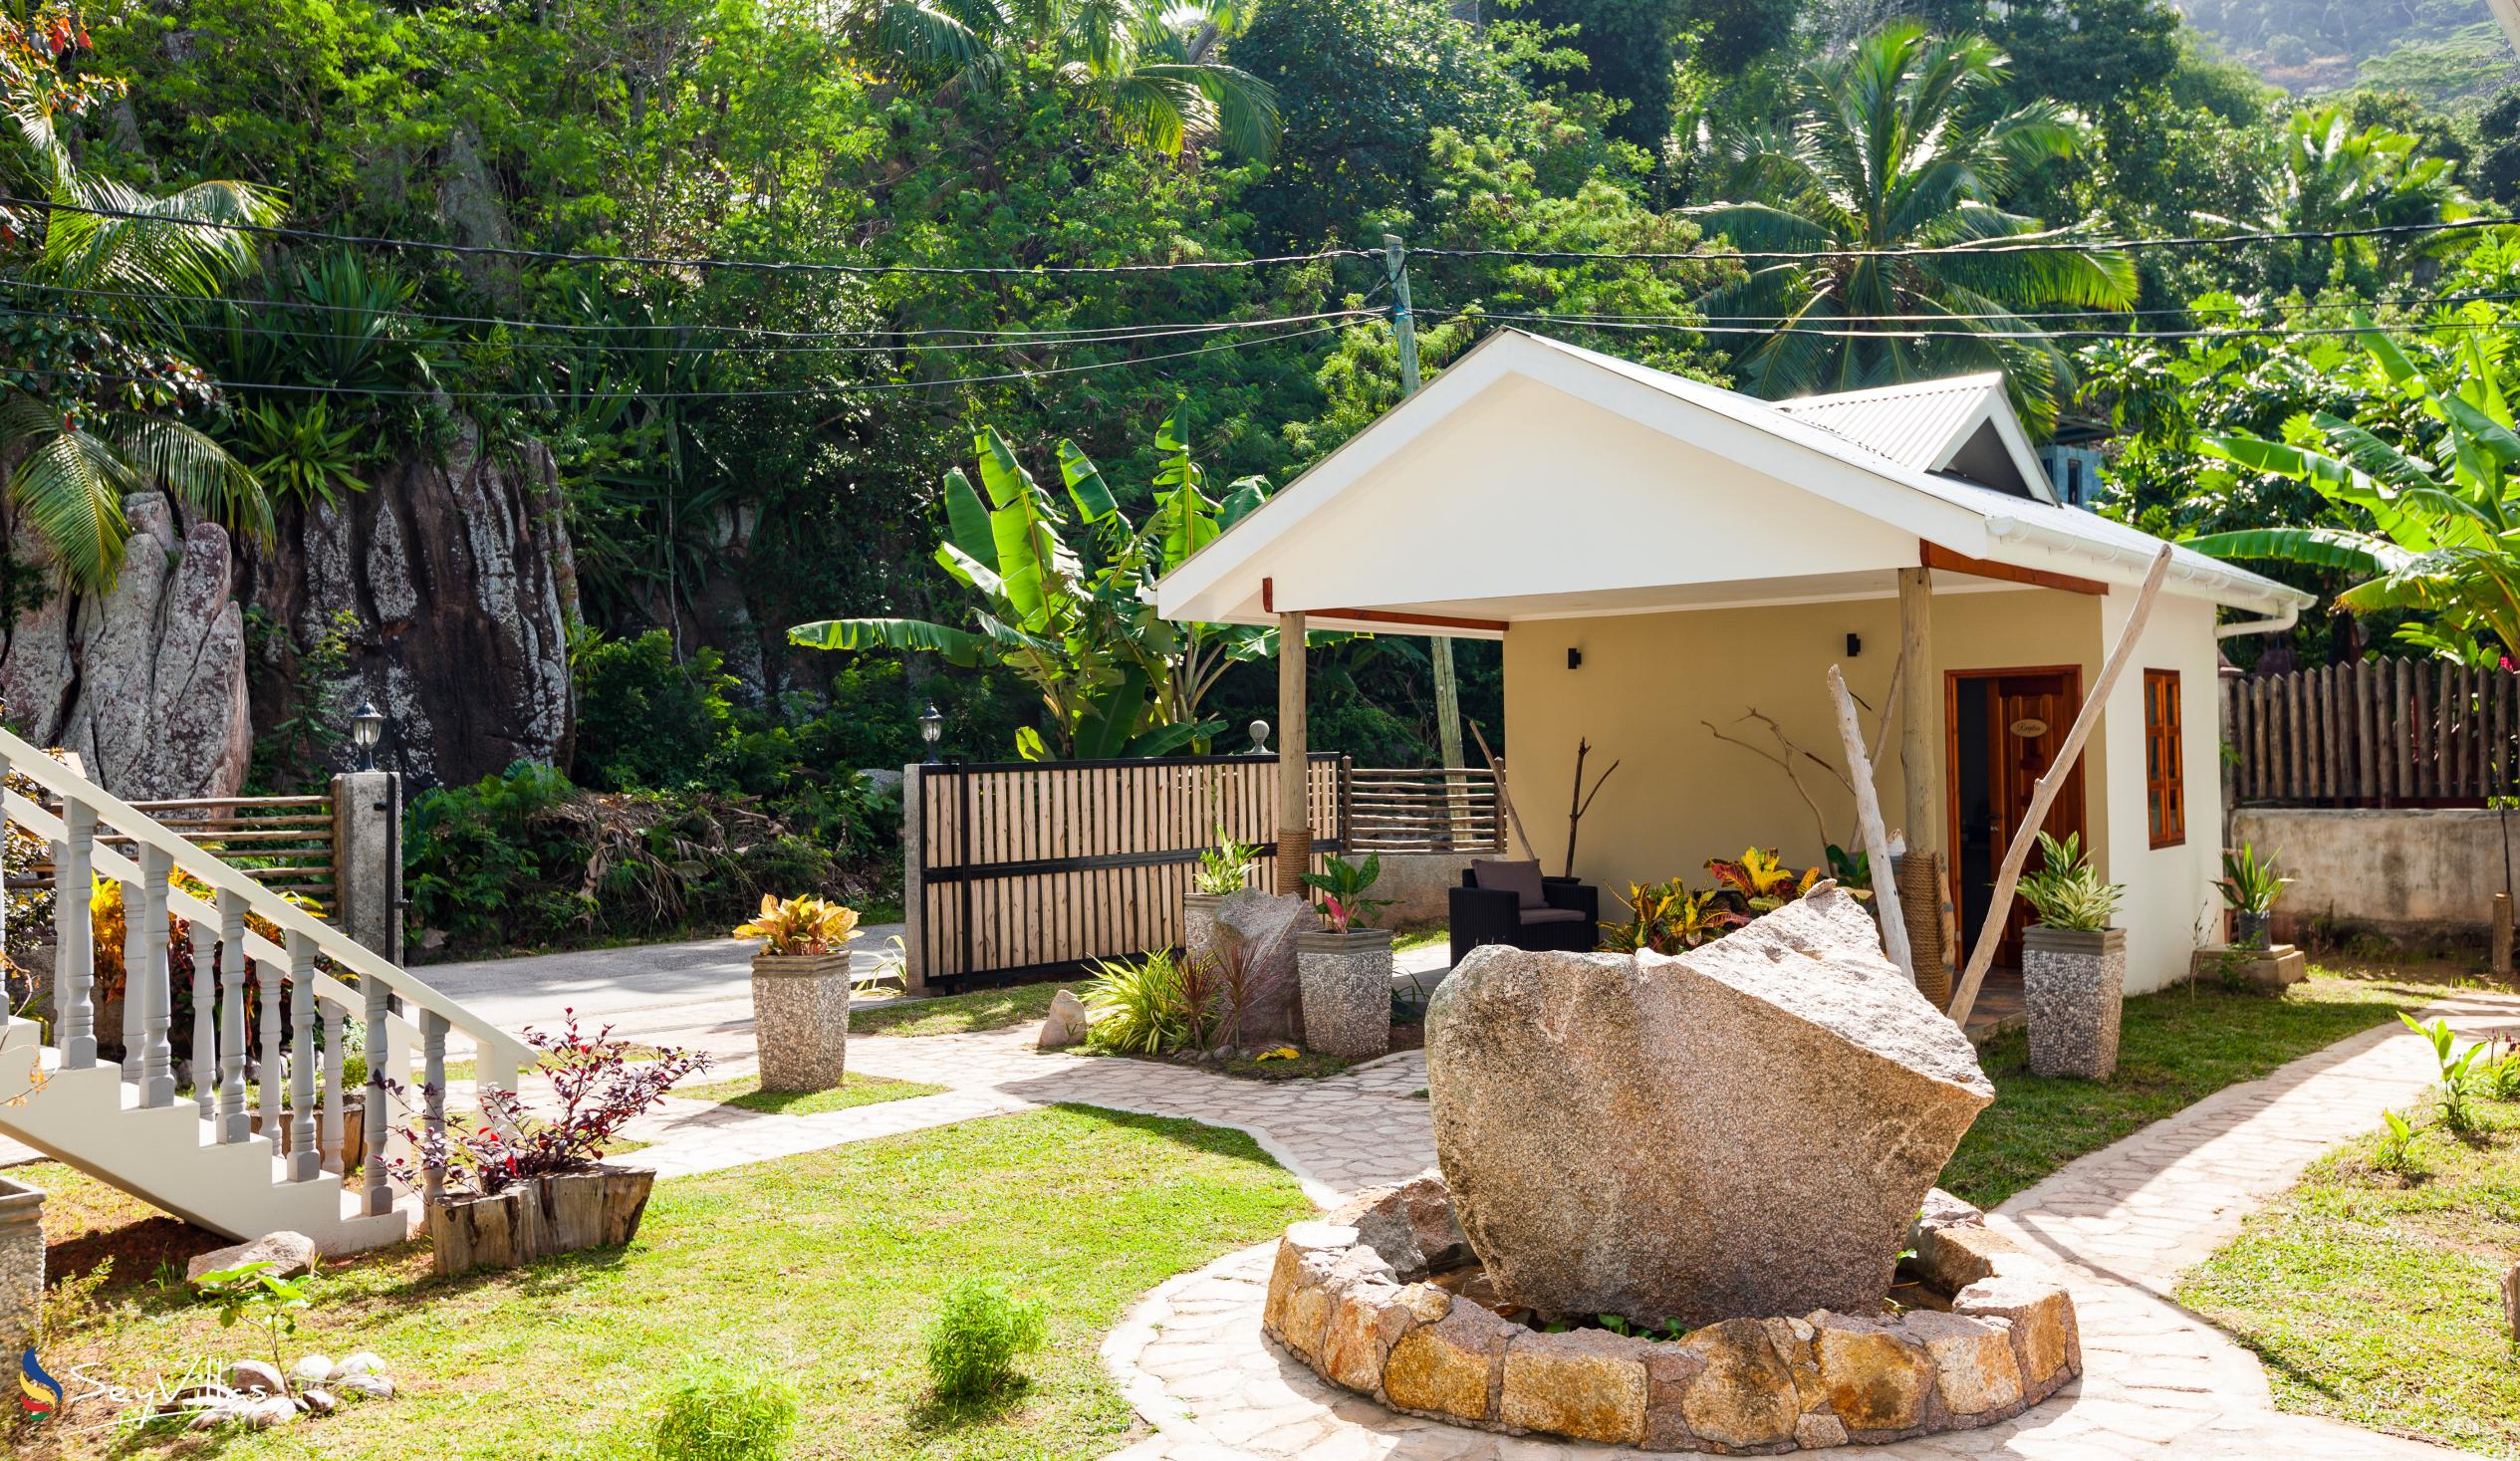 Photo 6: Maison Ed-Elle - Outdoor area - La Digue (Seychelles)